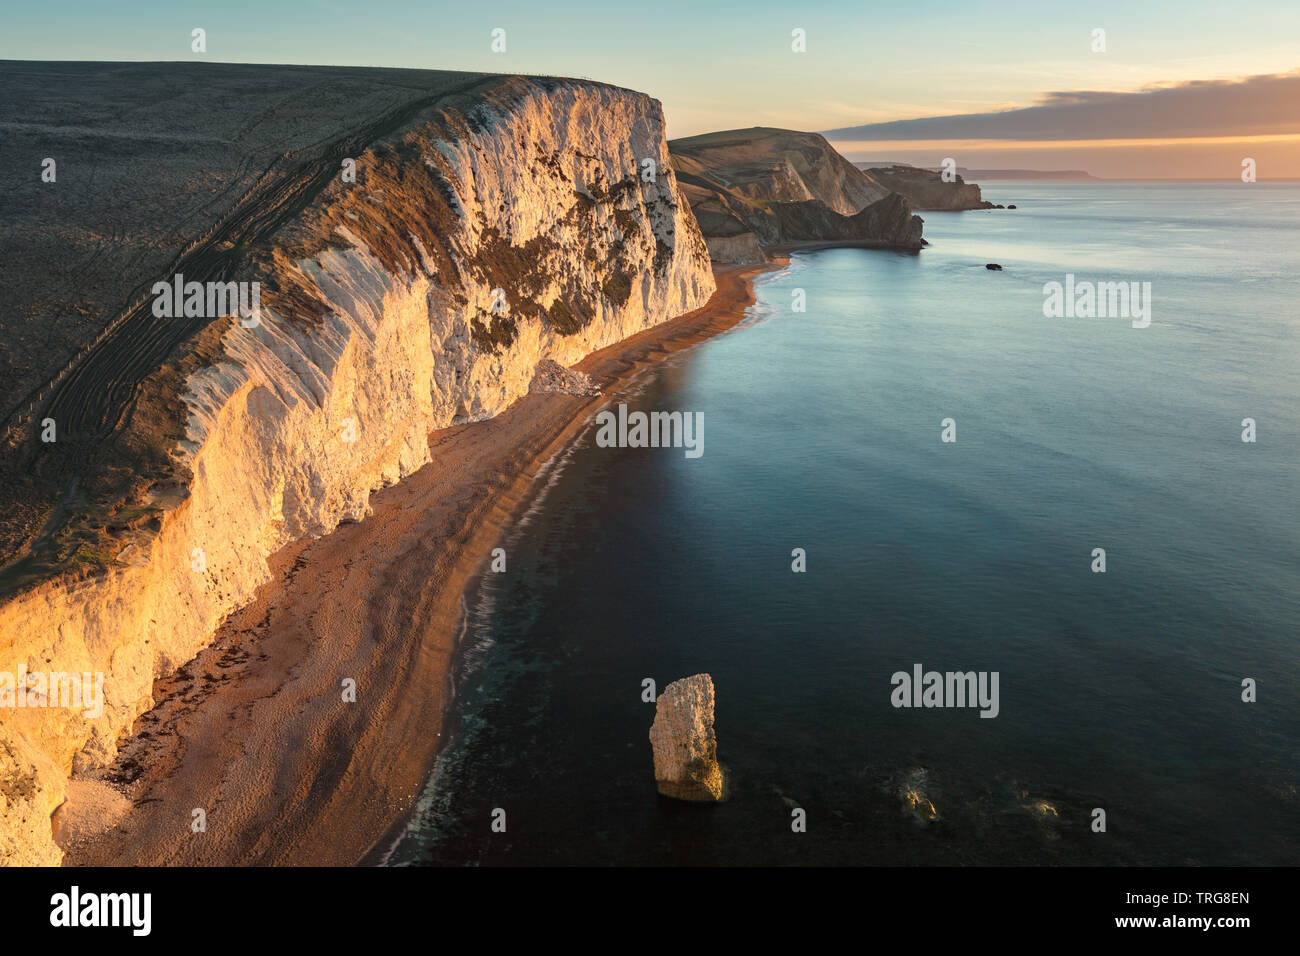 Jurassic Coast from Bat's Head, Dorset, England Stock Photo